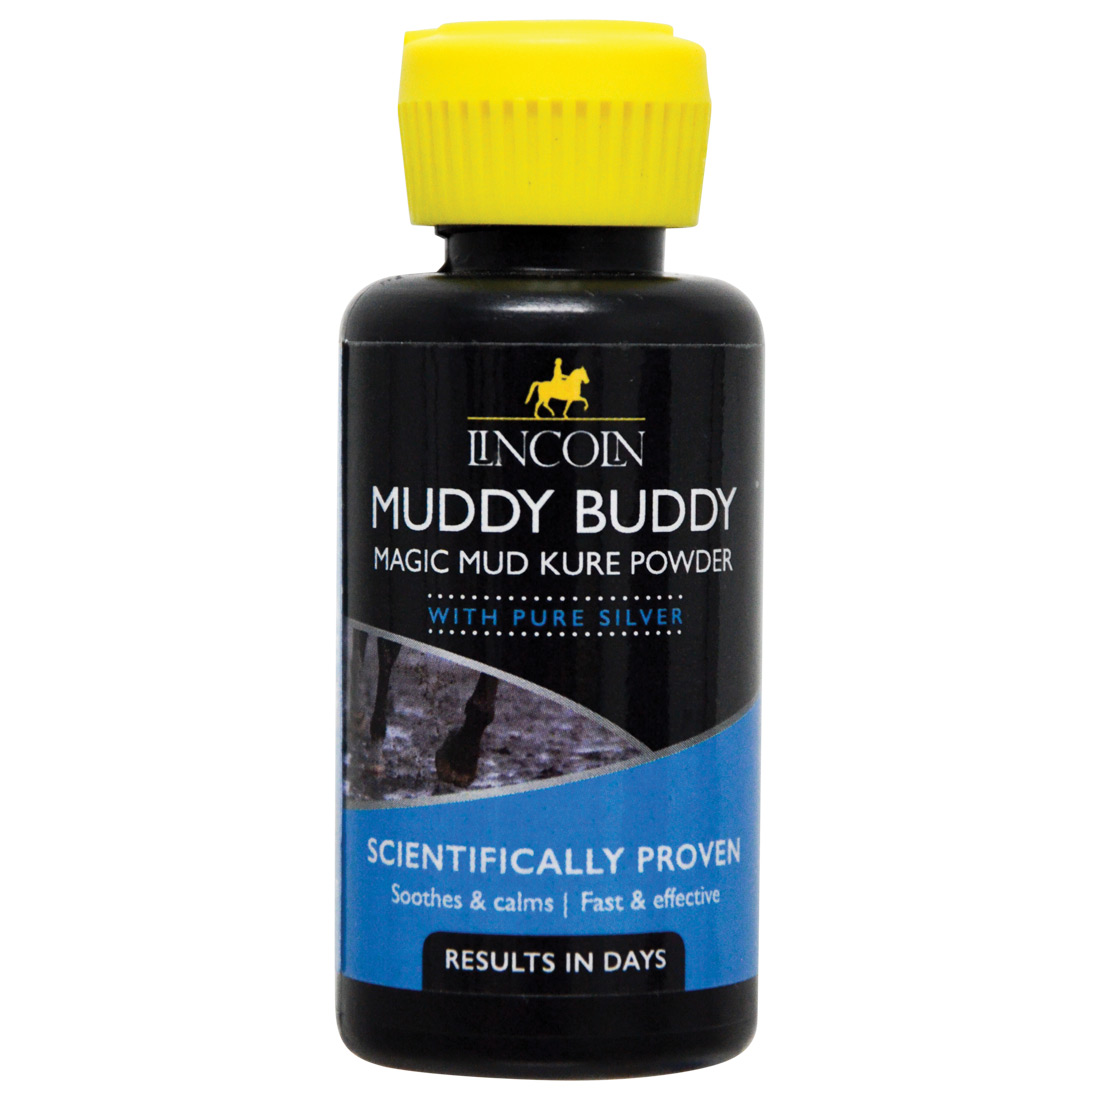 Lincoln Muddy Buddy Magic Mud Kure Powder – 15g